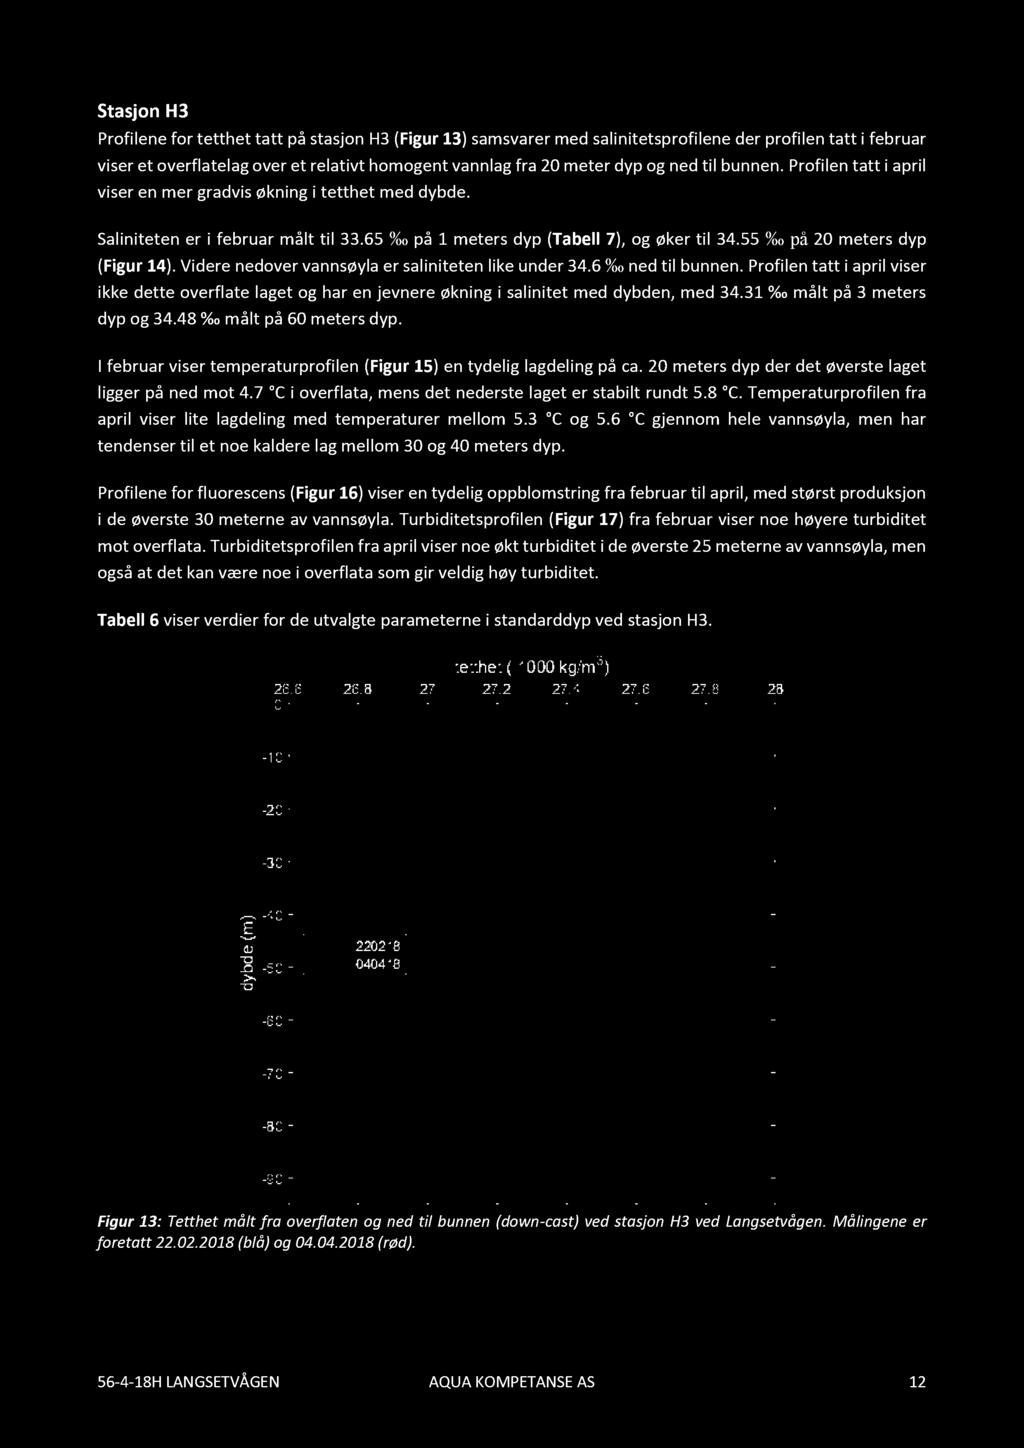 Stasjon H3 Profilene for tetthettattpå stasjon H3 (Figur 13) samsvarer med salinitetsprofilene der profilen tatt i februar viser et overflatelag over et relativt homogent vannlag fra 20 meter dyp og